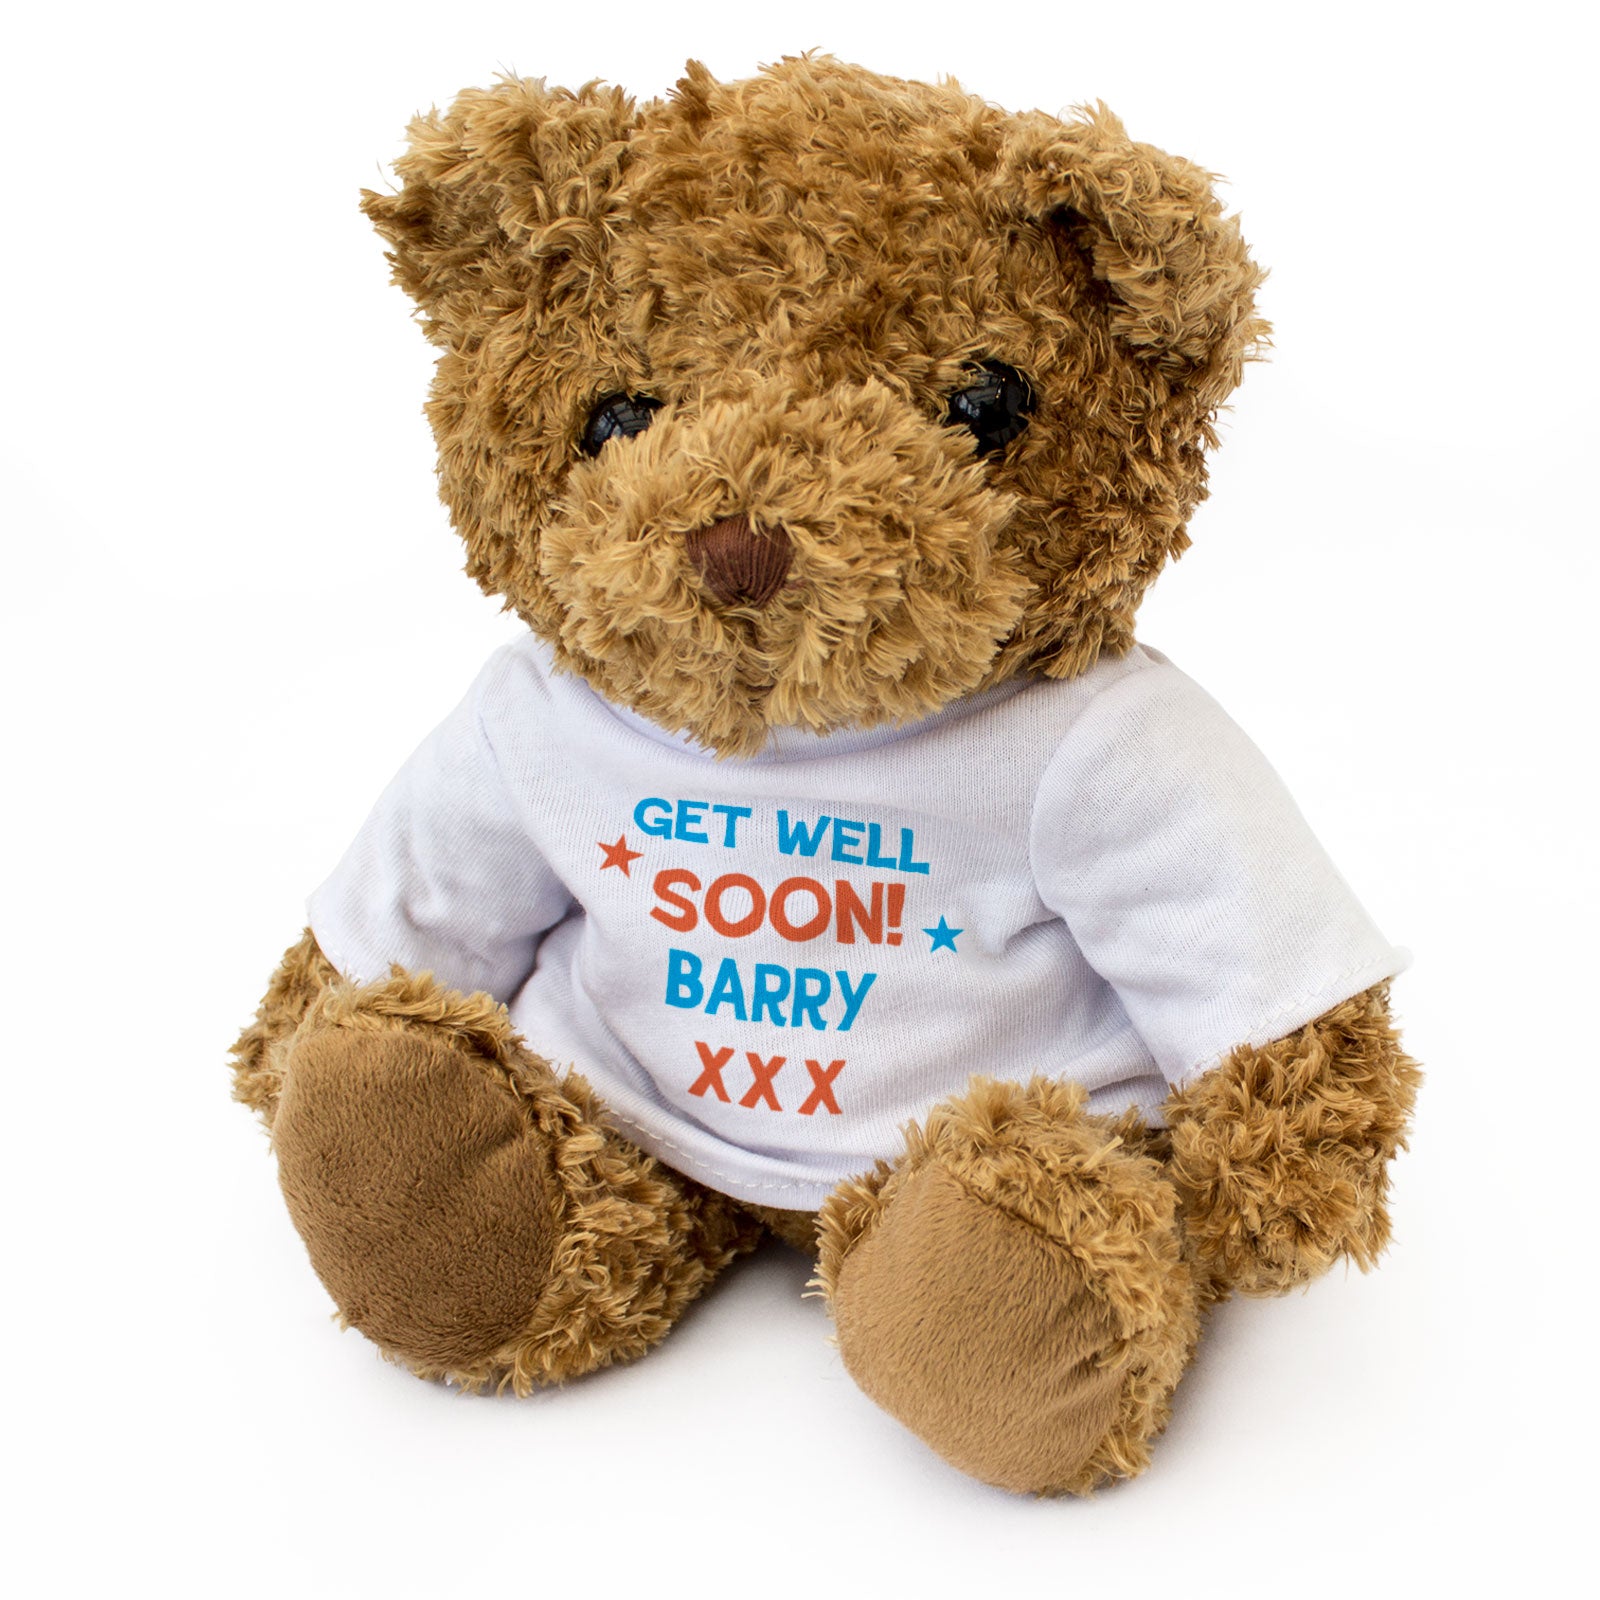 Get Well Soon Barry - Teddy Bear